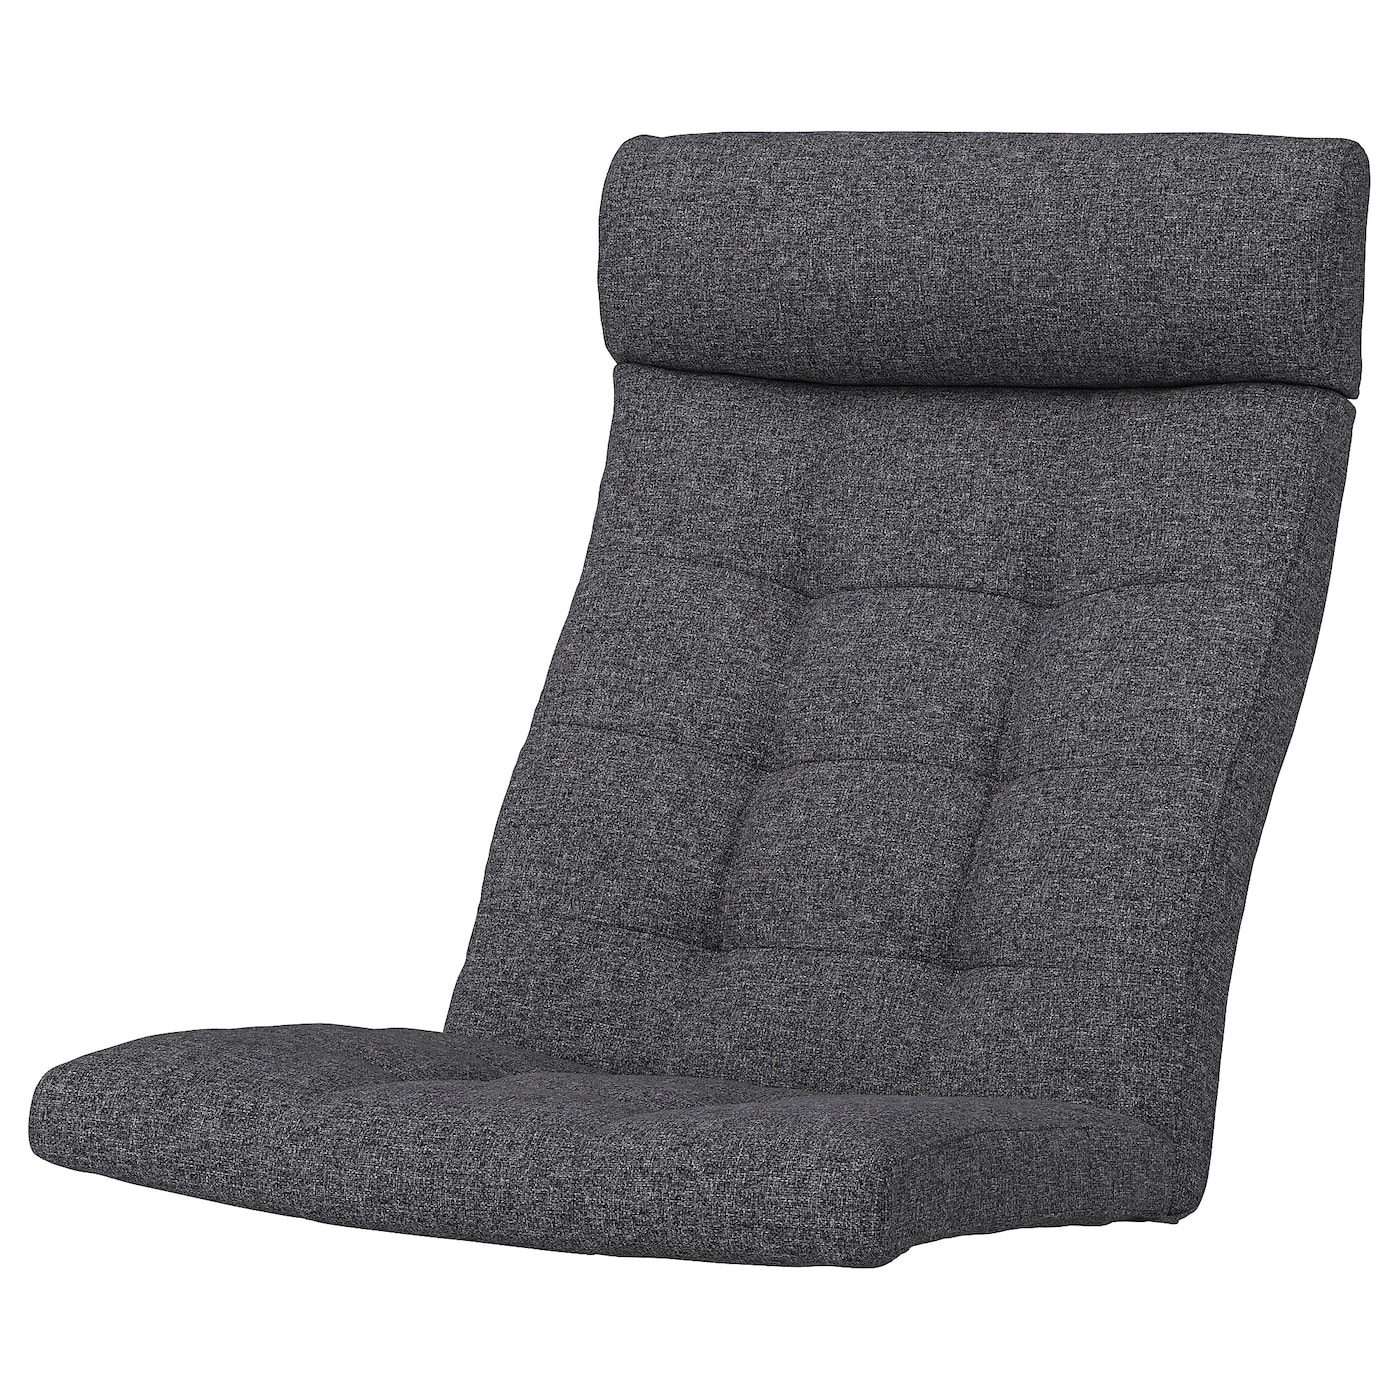 Подушка на кресло - POÄNG /POANG IKEA /  ПОЭНГ ИКЕА,  137х55 см, серый